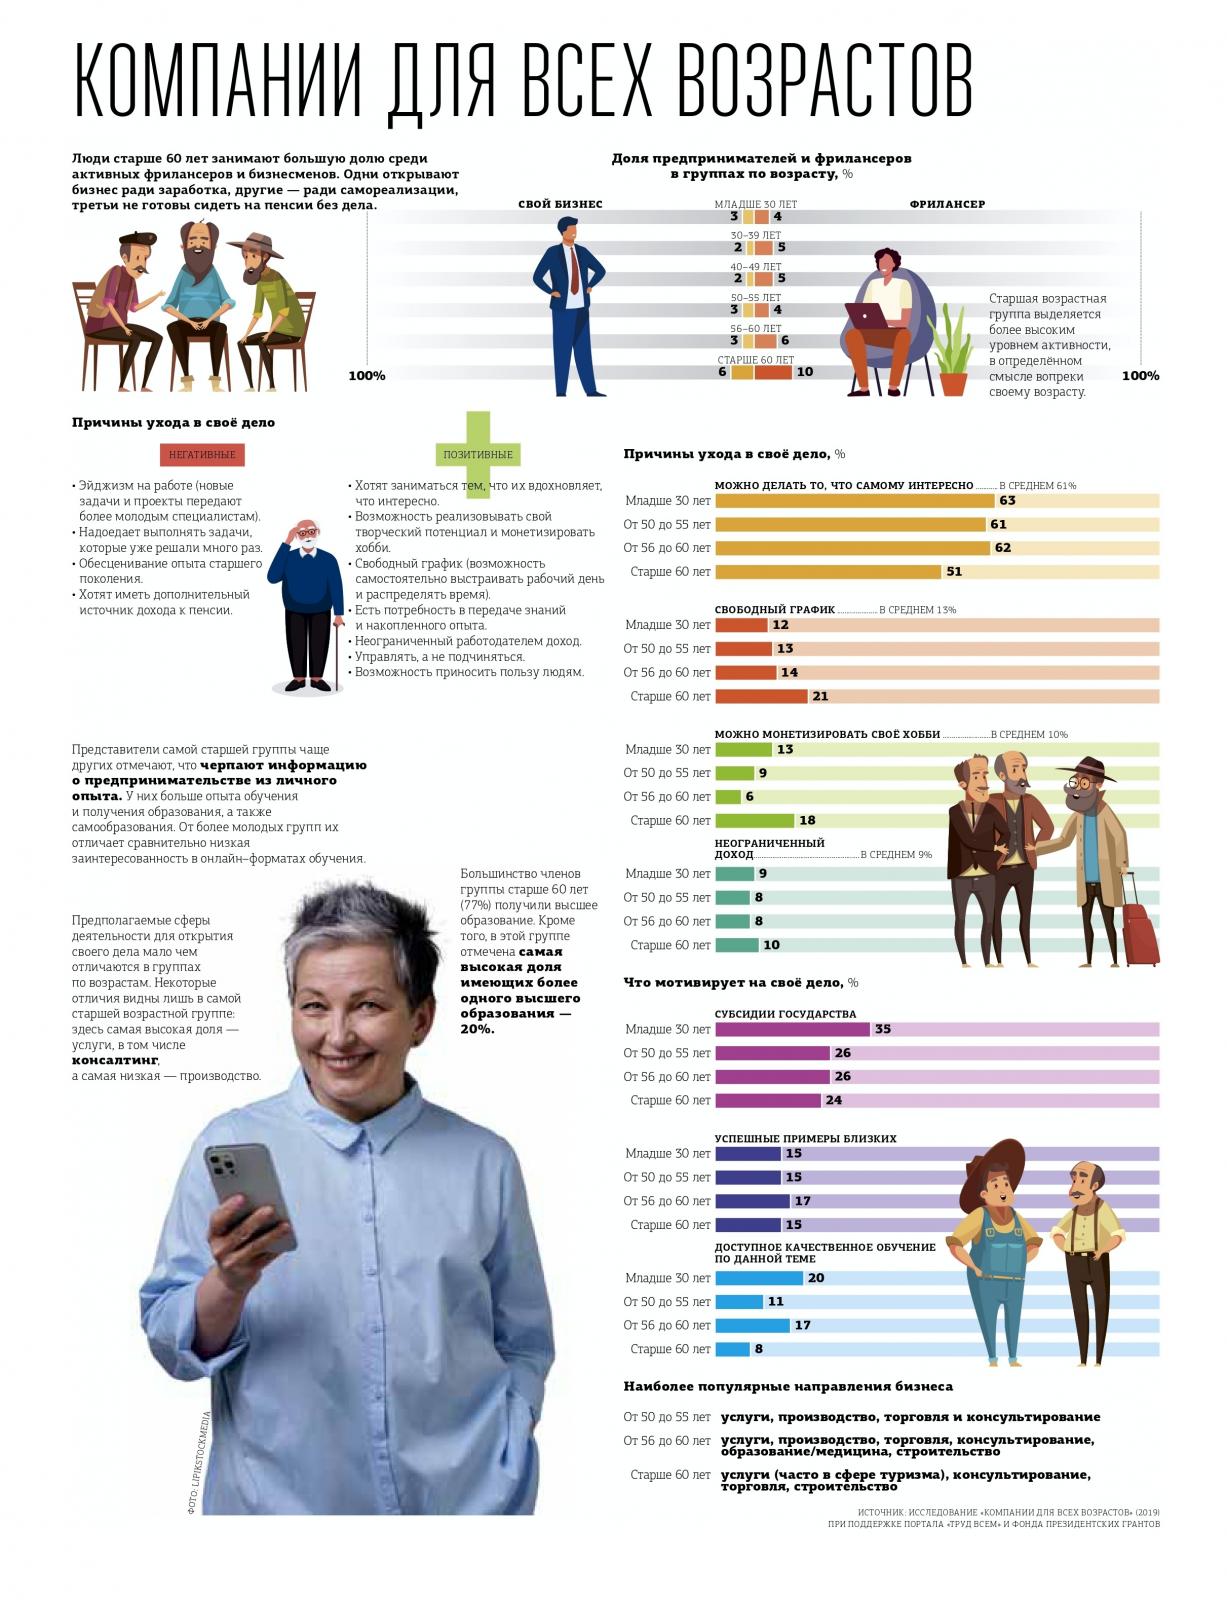 Предпринимательство в старшем возрасте- наглядная инфографика